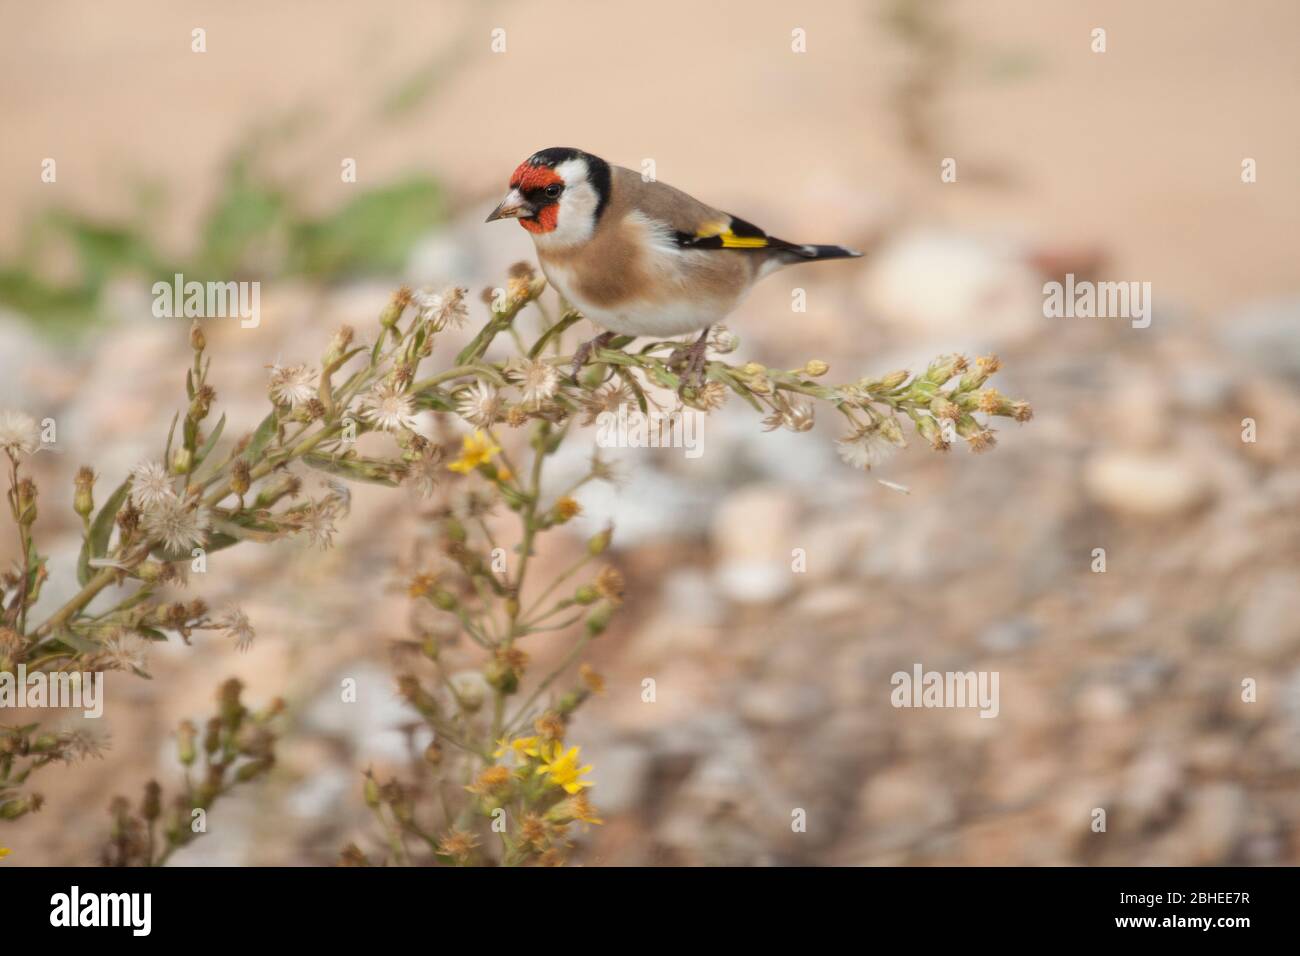 Le goldfinch (Carduelis carduelis) perché sur une plante tout en mangeant ses fleurs. Banque D'Images